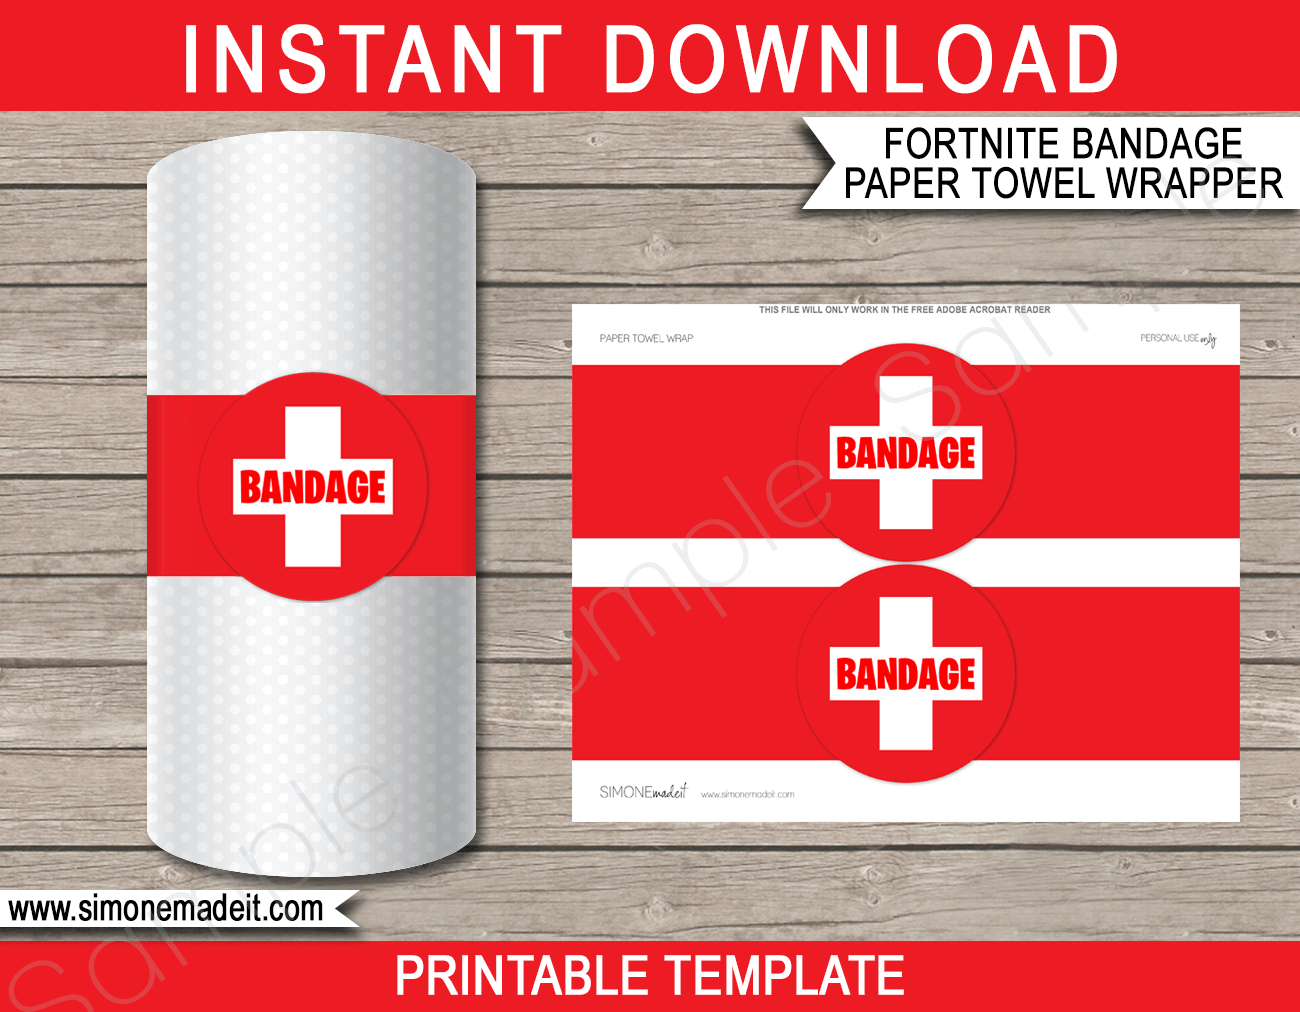 Fortnite Bandage Paper Towel Printable Template | Fortnite Decorations - Fortnite Free Printables